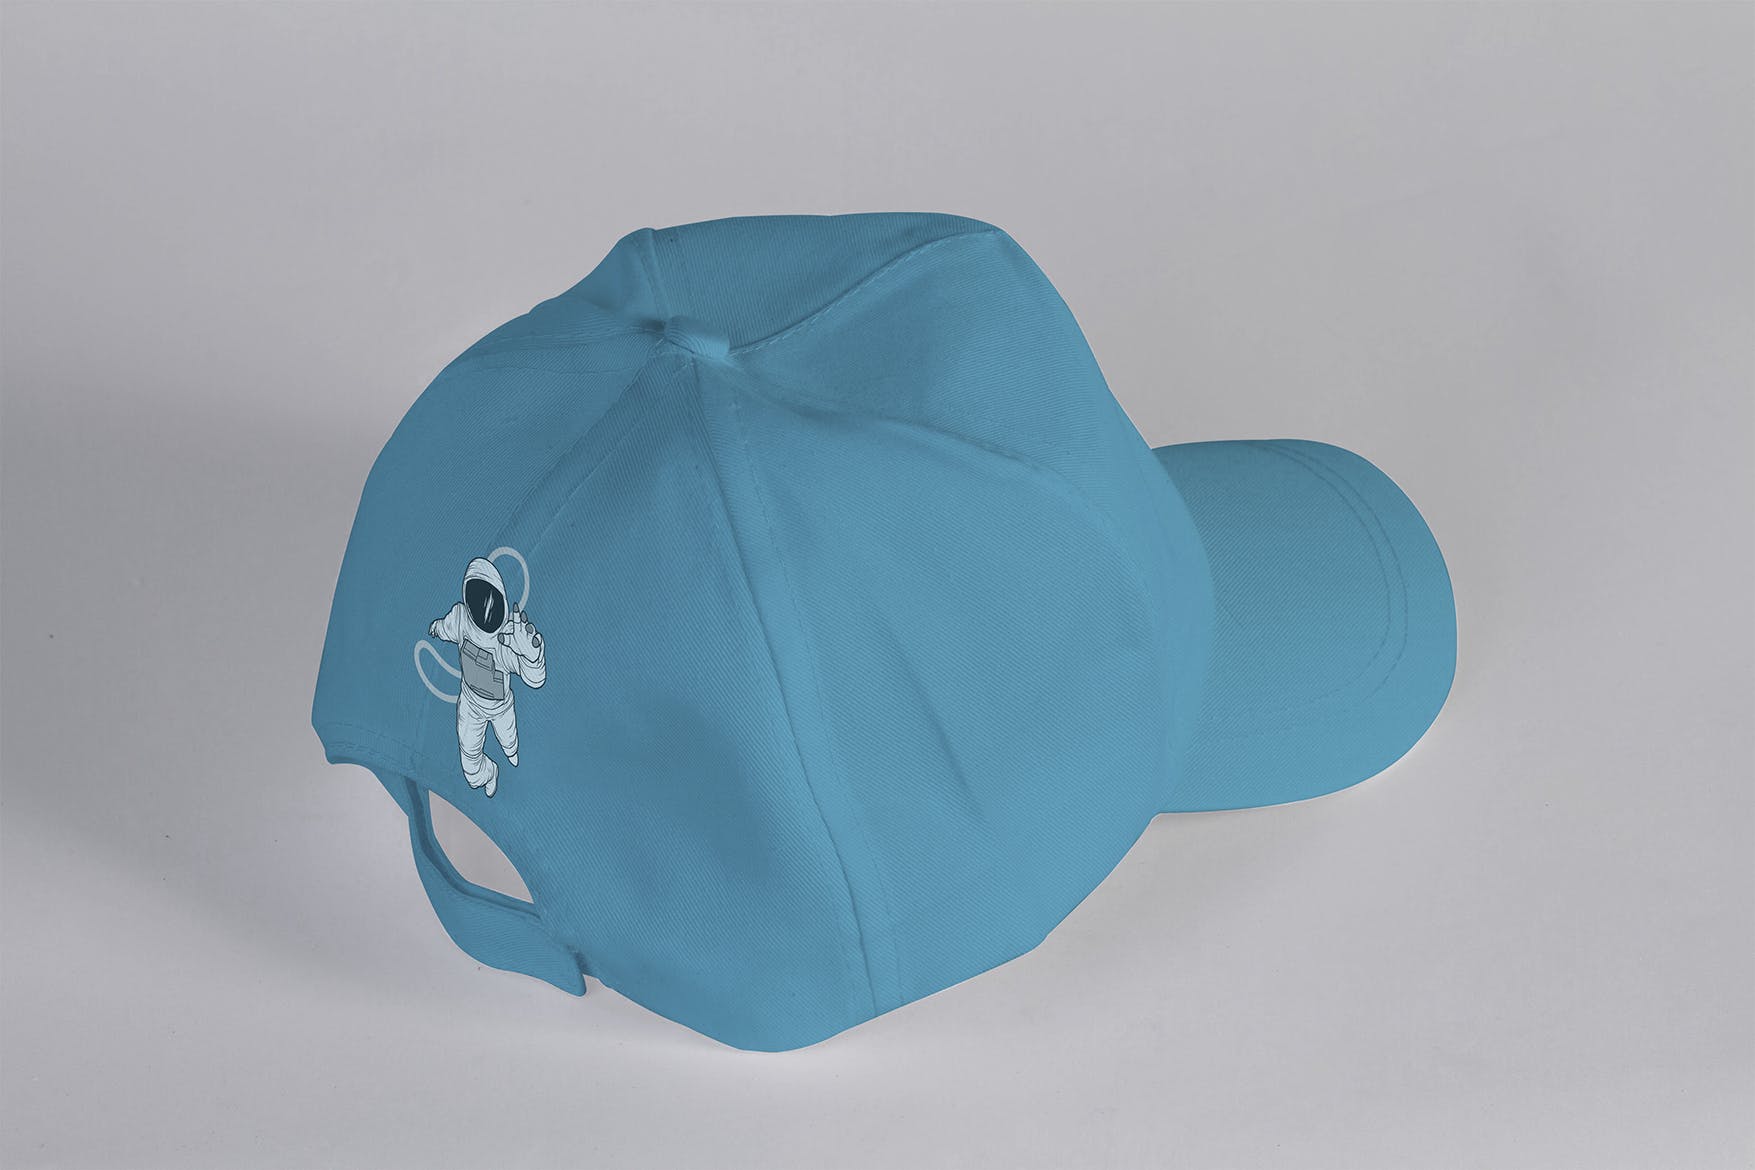 中性多功能帽子外观设计样机模板 Unisex Multipurpose Cap Mock Up插图(3)